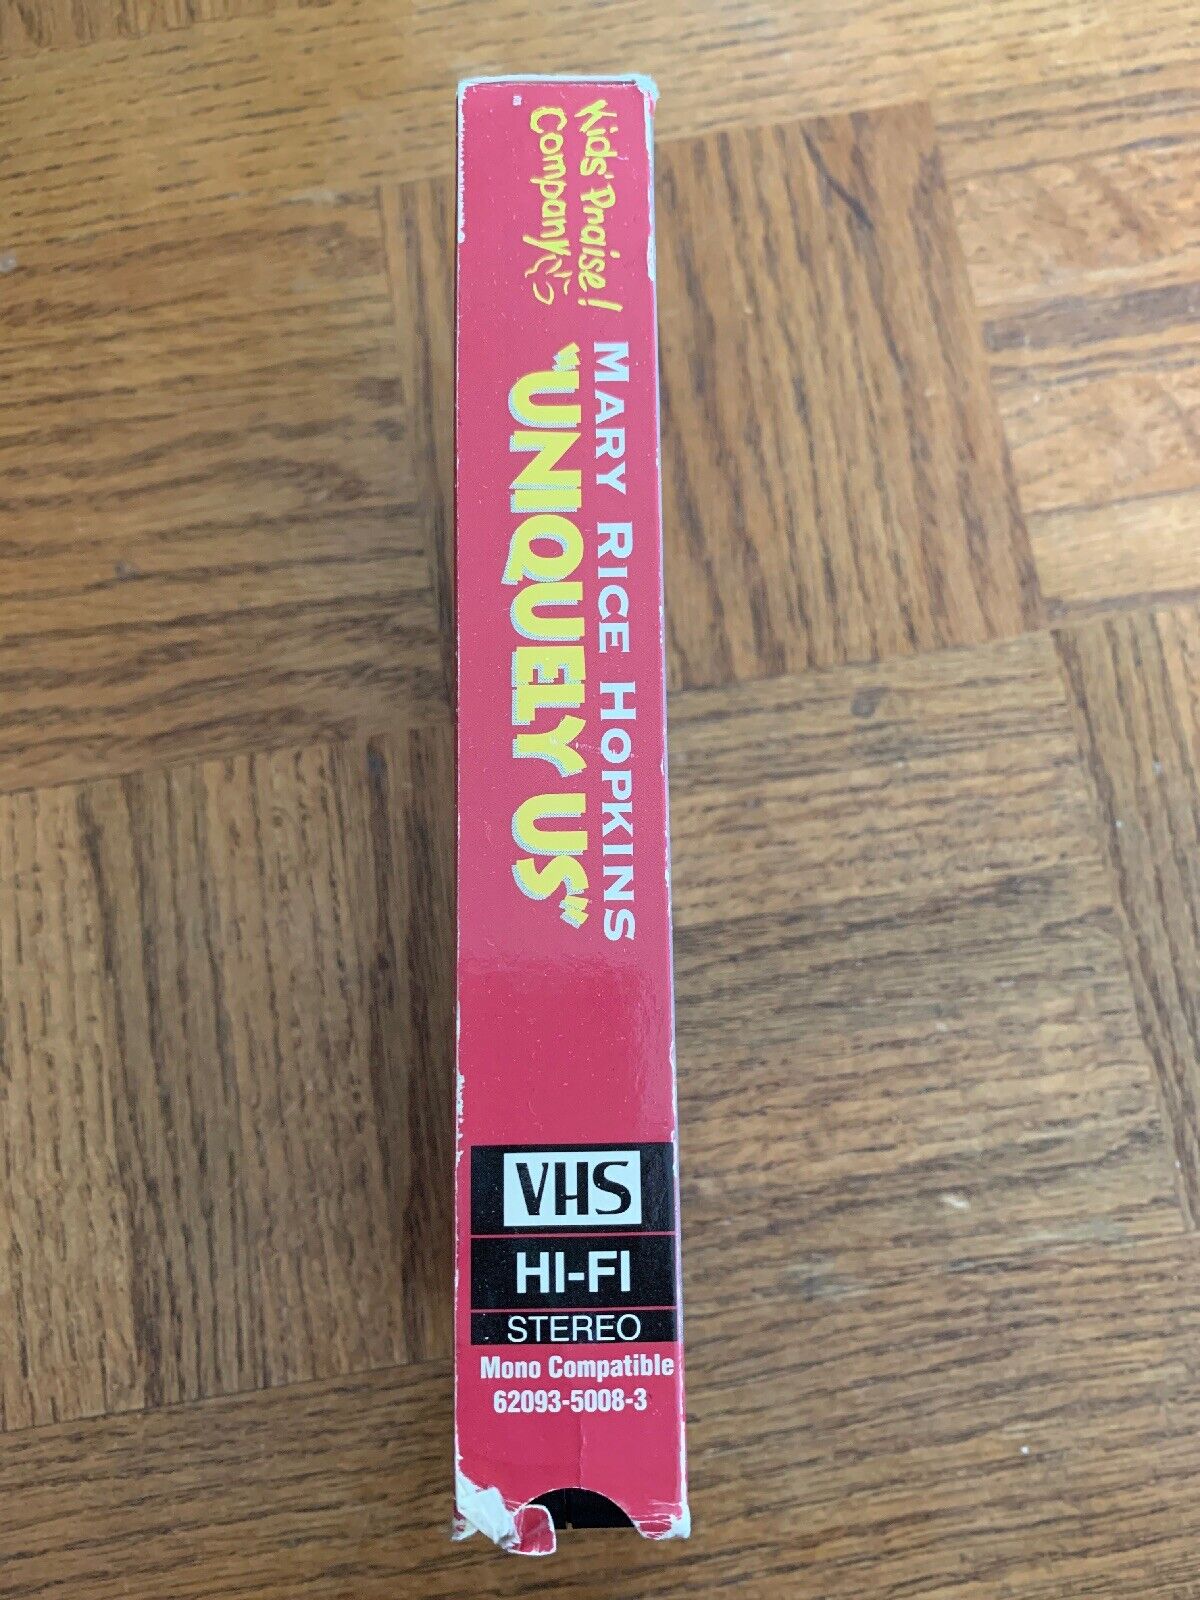 Mary Rice Hopkins VHS Beperkt tot deze maand